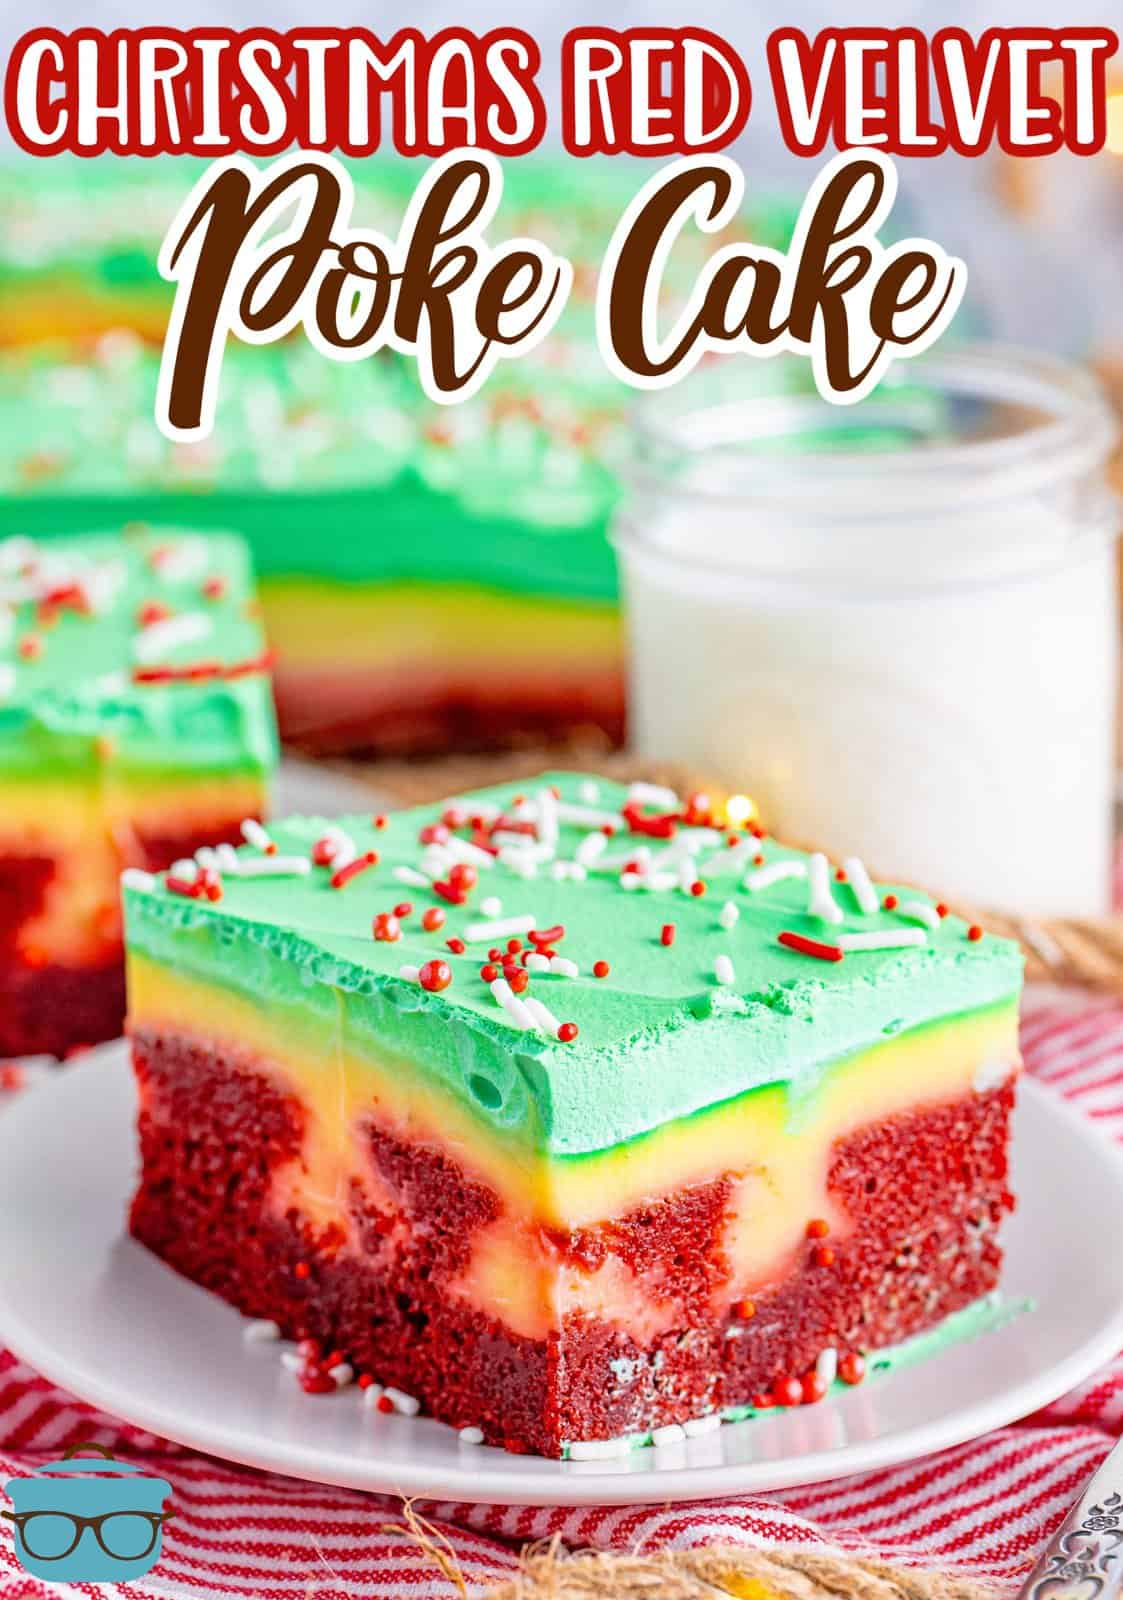 Some Christmas Red Velvet Jello Poke Cake on a plate.